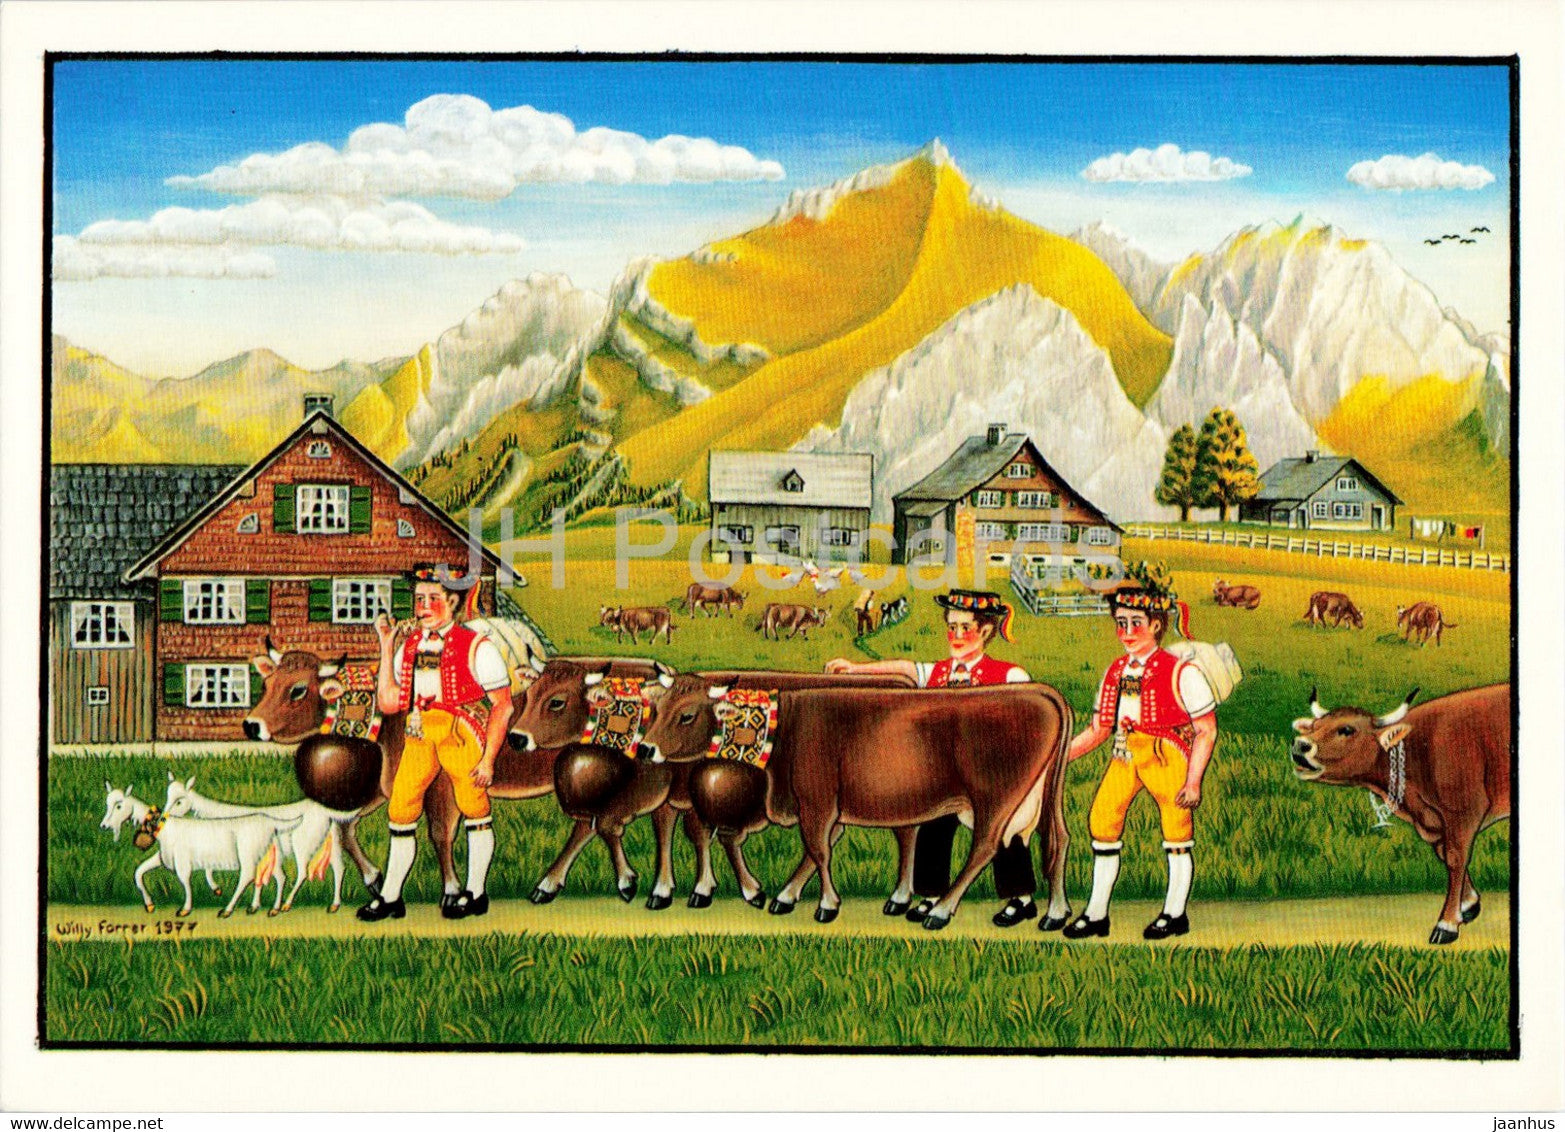 Im Oberdorf z'Wildhaus by Willi Forrer - illustration - animals - cow - folk costumes - Switzerland - unused - JH Postcards